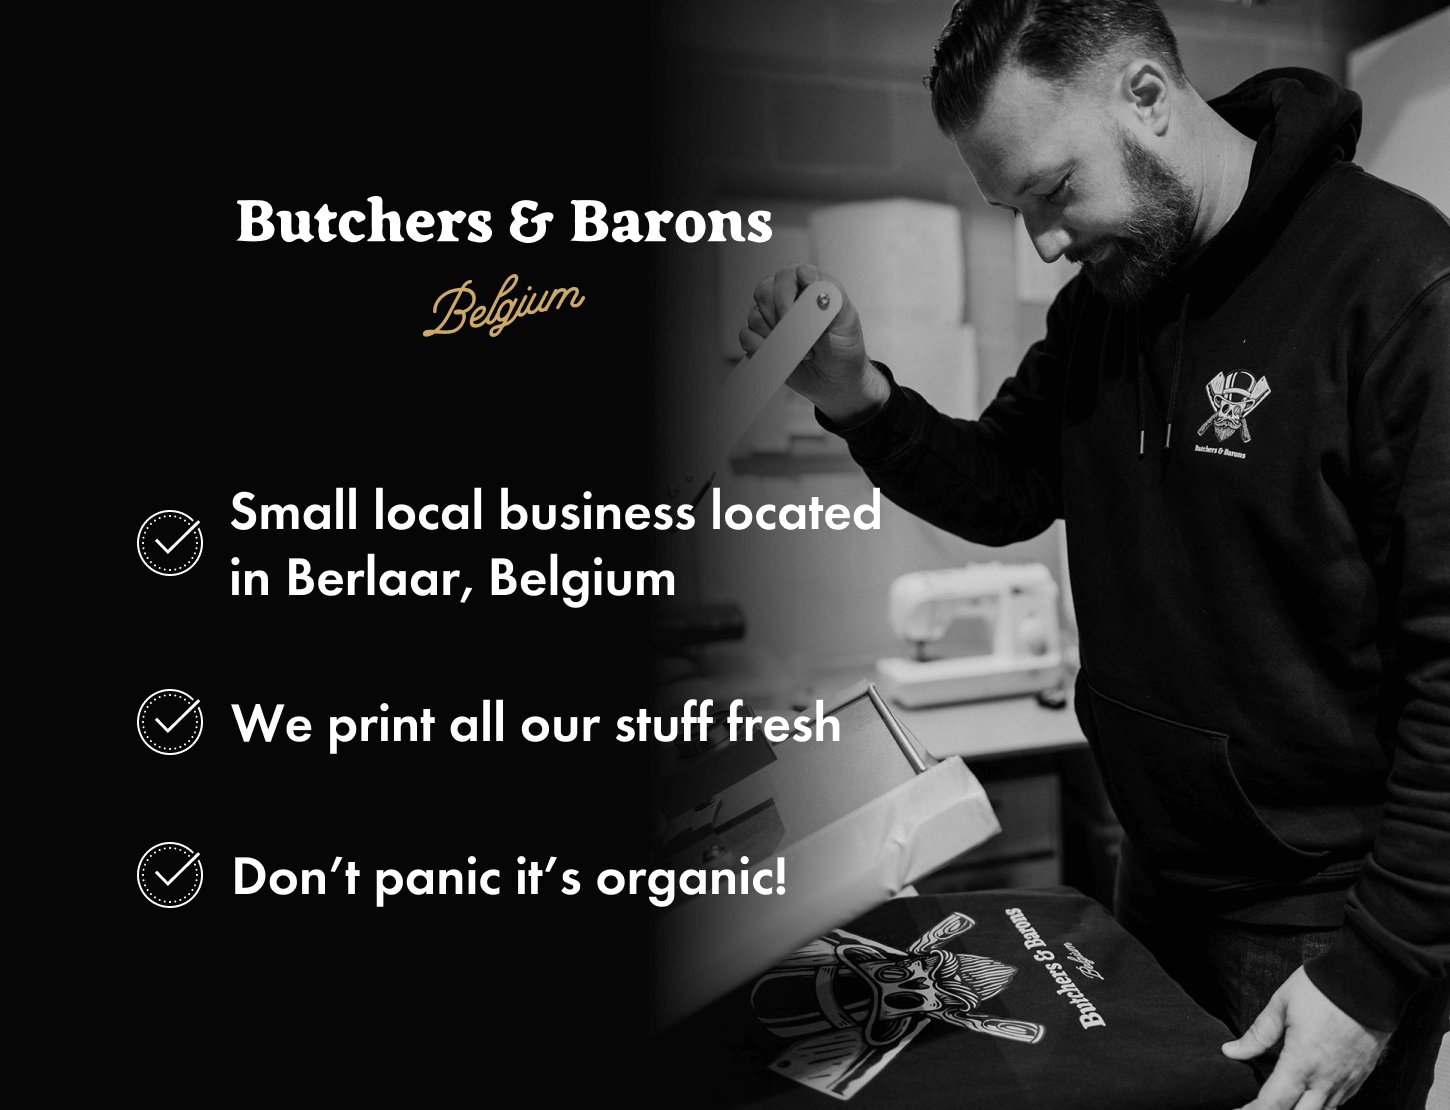 Butchers & Barons